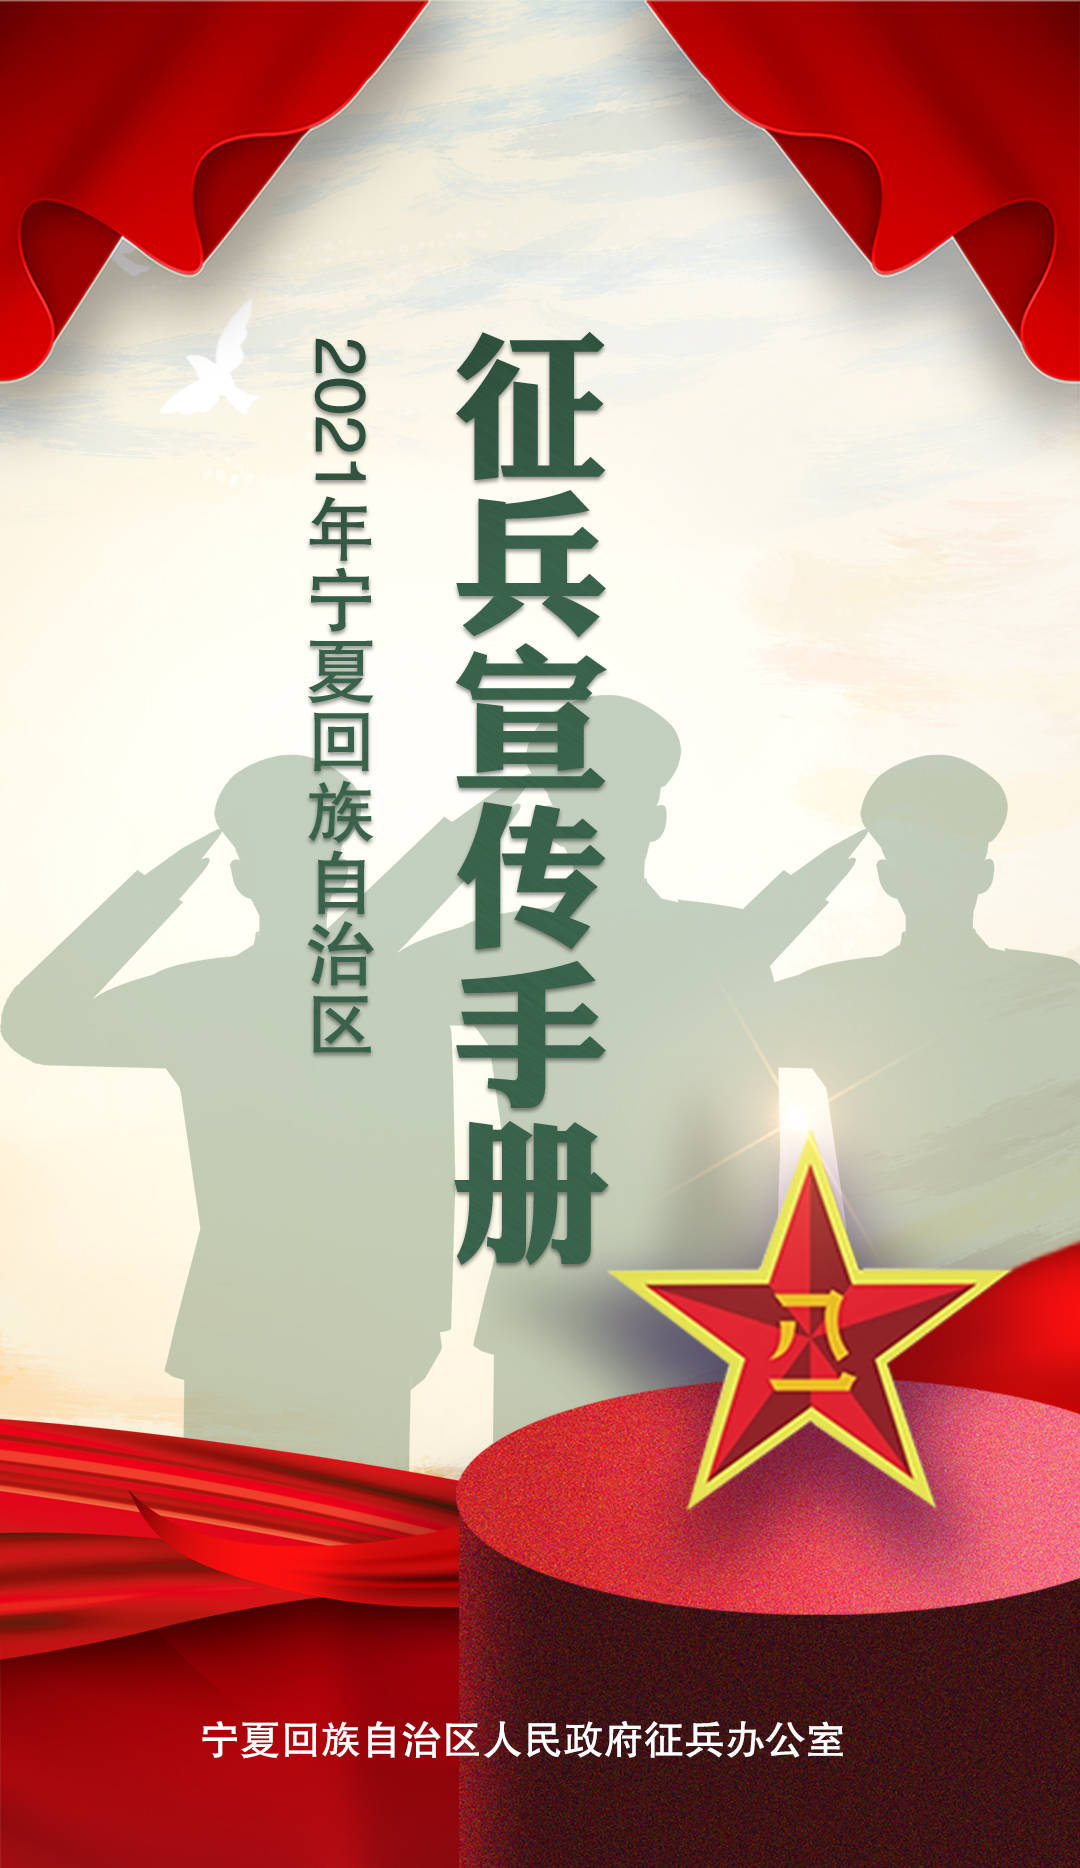 最详细的2021年宁夏征兵宣传手册来了!